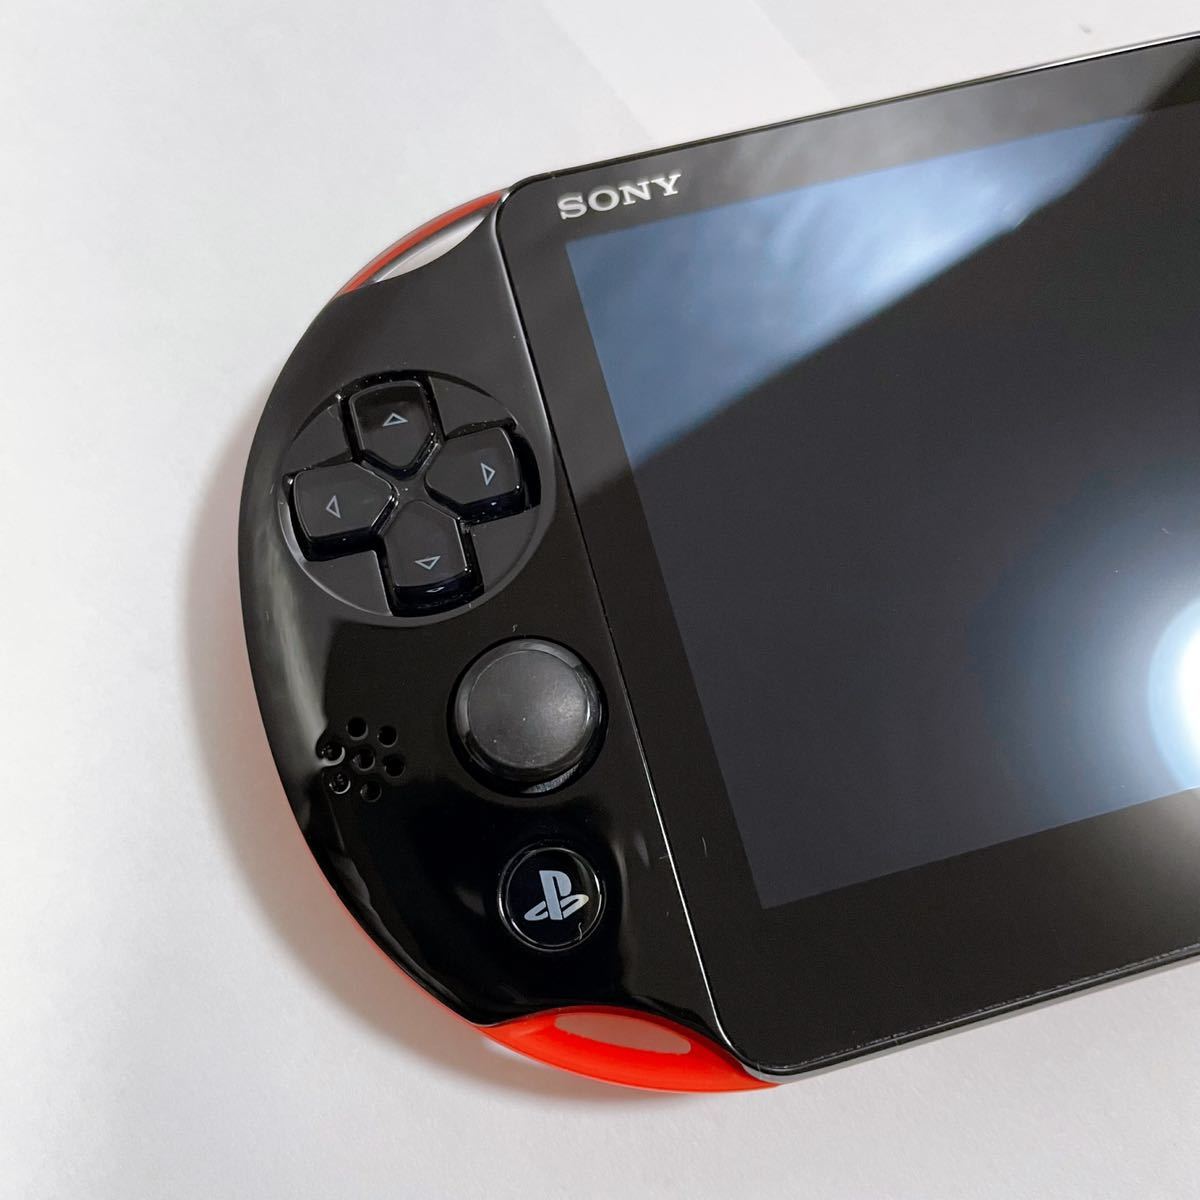 PS Vita PCH-2000 Wi-Fiモデル スーパーバリューパック限定カラー